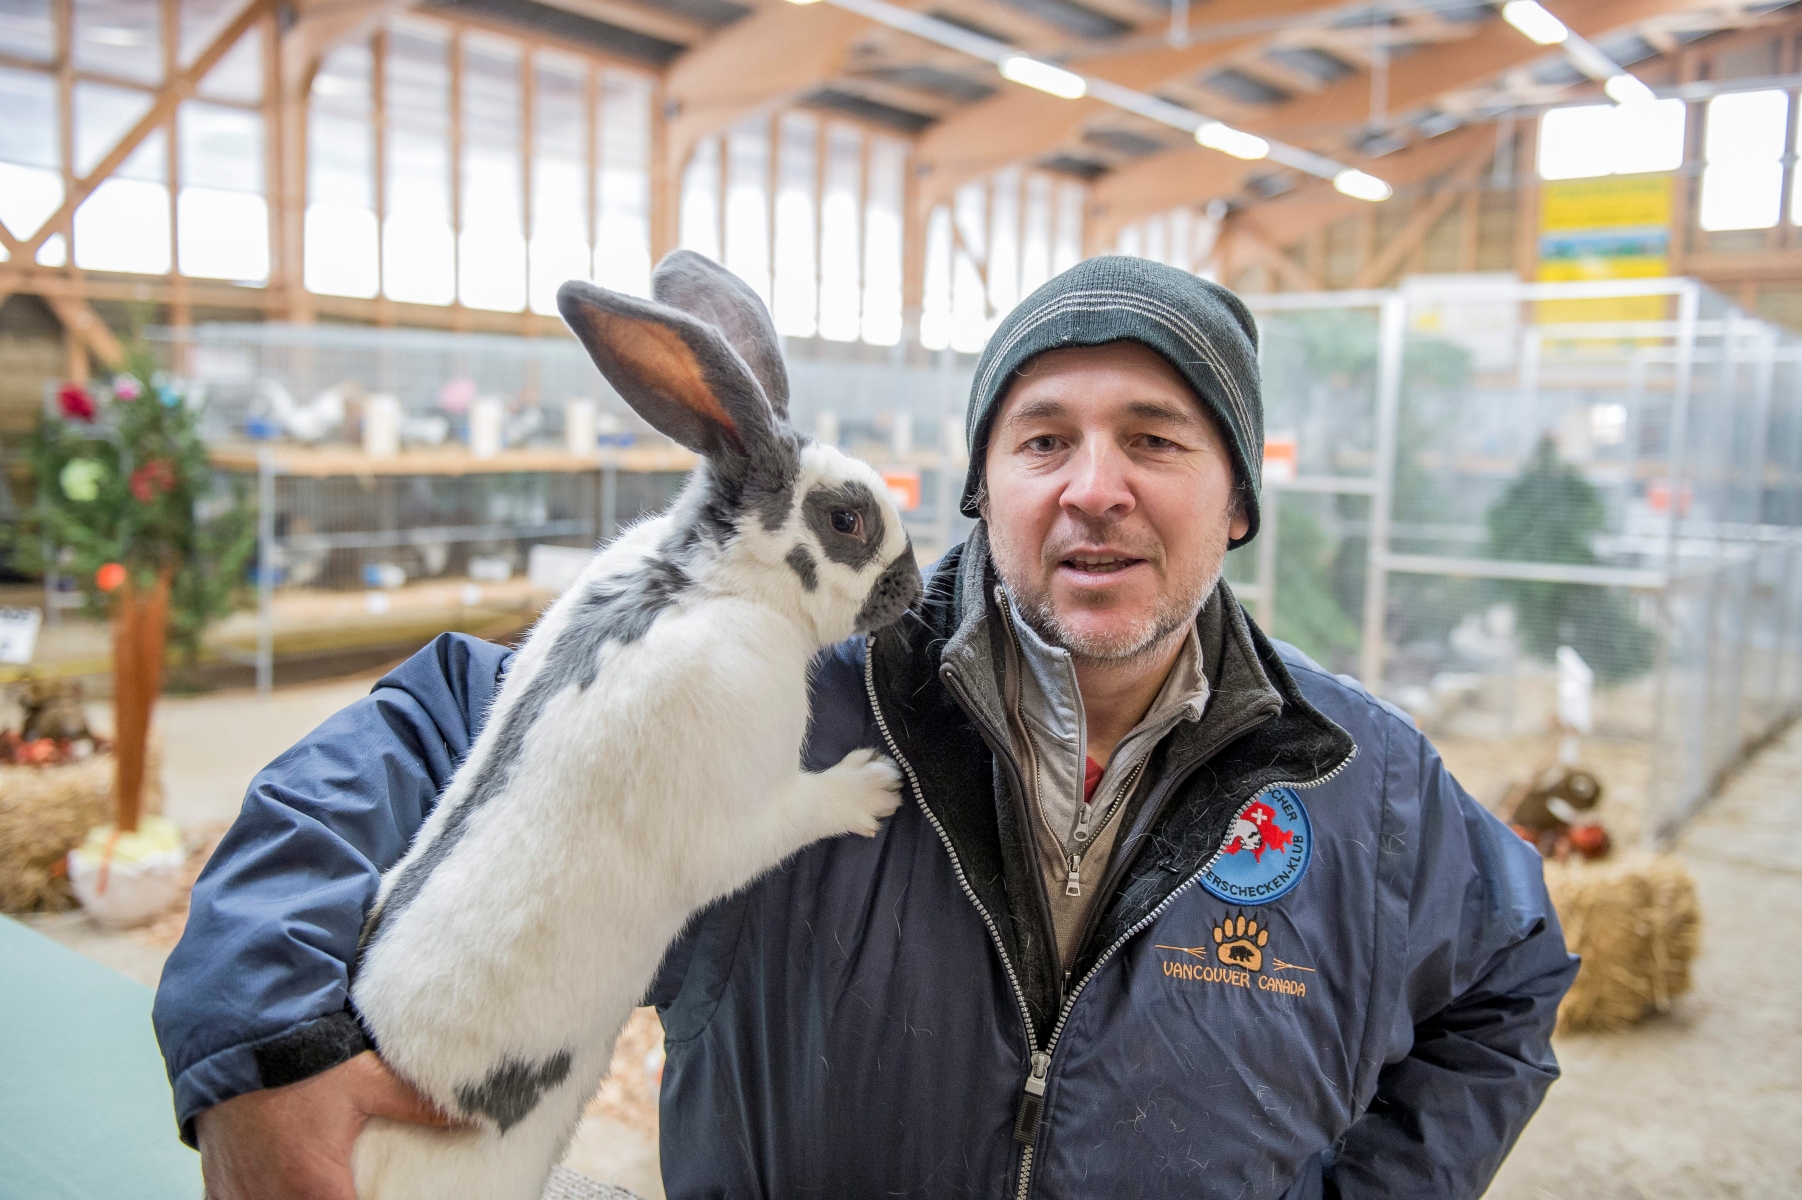 Portrait de Pierre-Alain Borel, eleveur de lapin. 

Les Ponts-de-Martel, le 10.11.2016

Photo : Lucas Vuitel